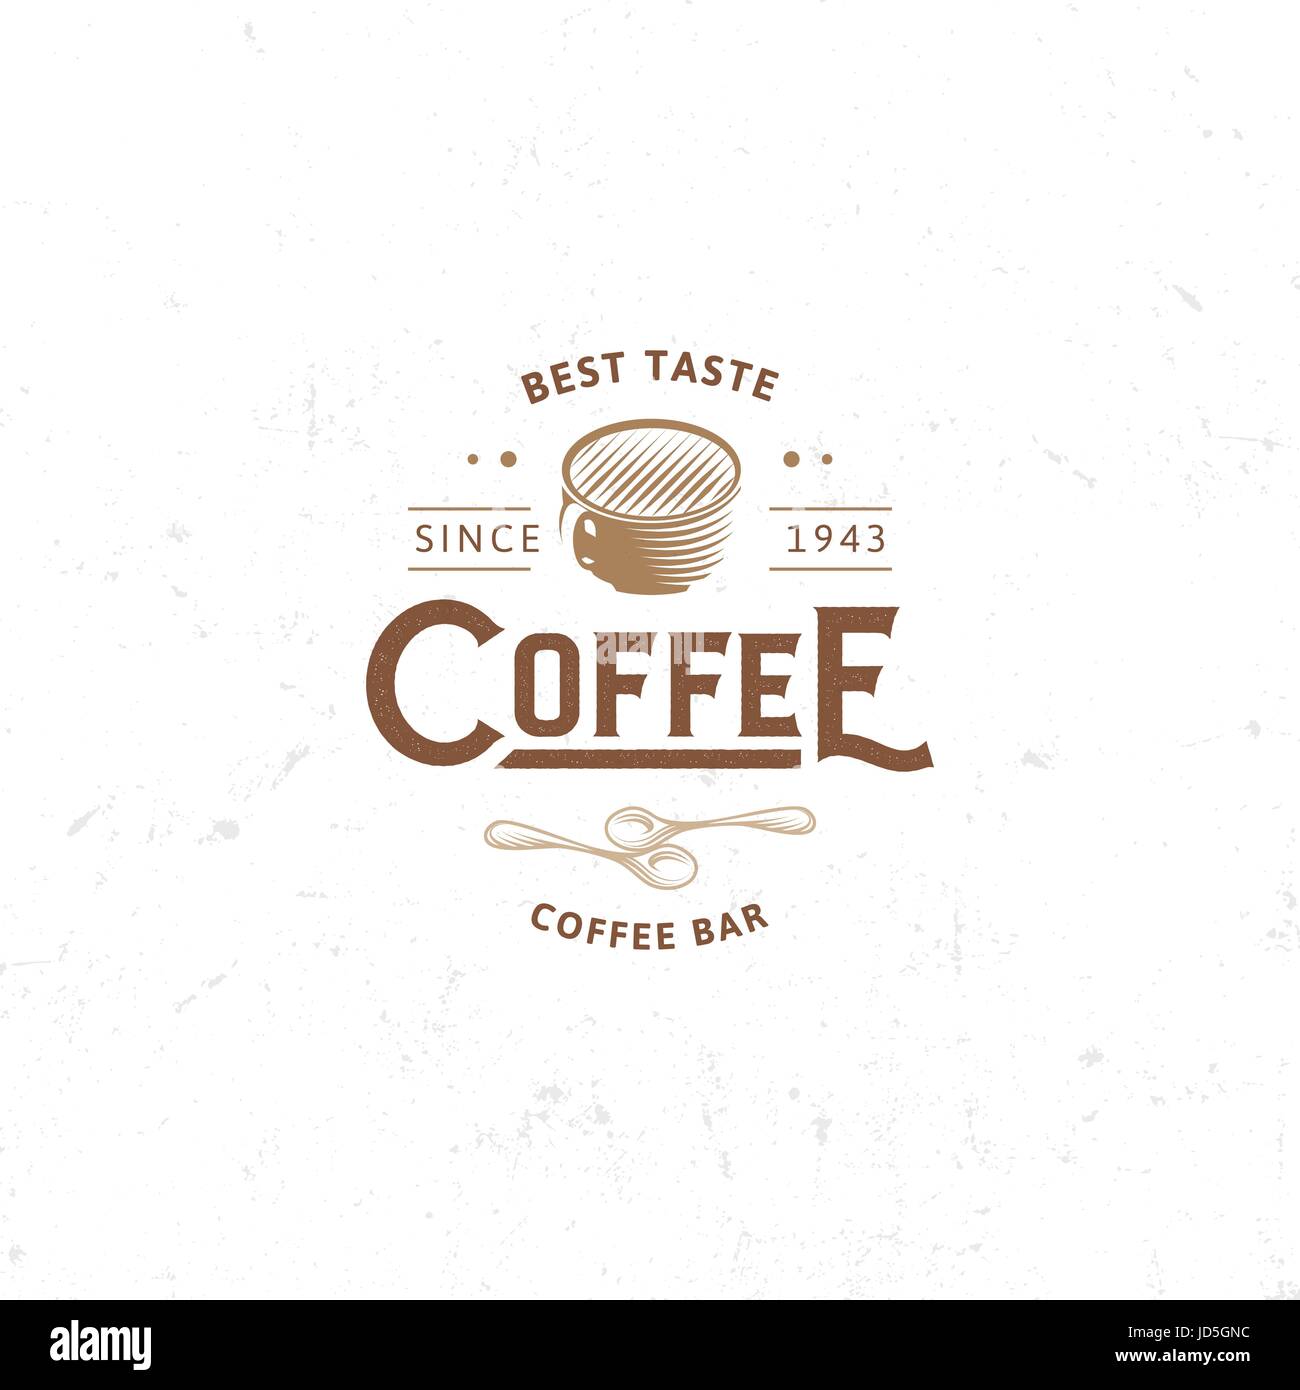 Vintage dunkel Kaffee Emblem, flach Retro-Abbildung. Braunen und Beige Farben zu unterzeichnen. Stilisierte Briefmarke des Vektors Schriftzug Getränk. Frühstück Café logo Stock Vektor